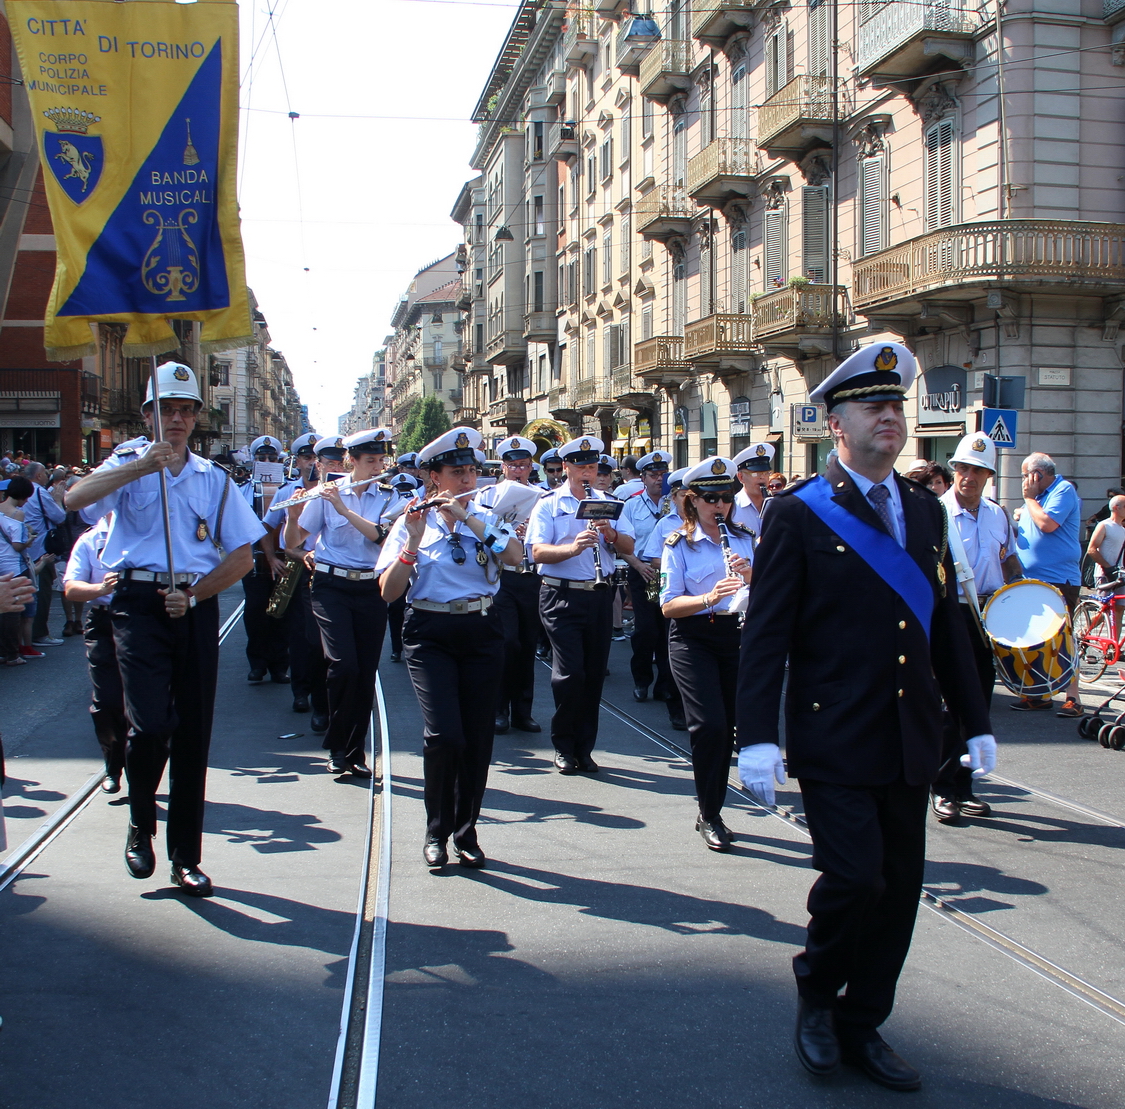 Gaypride2015_048.JPG - La banda Musicale dei Vigili urbani di Torino apre la sfilata